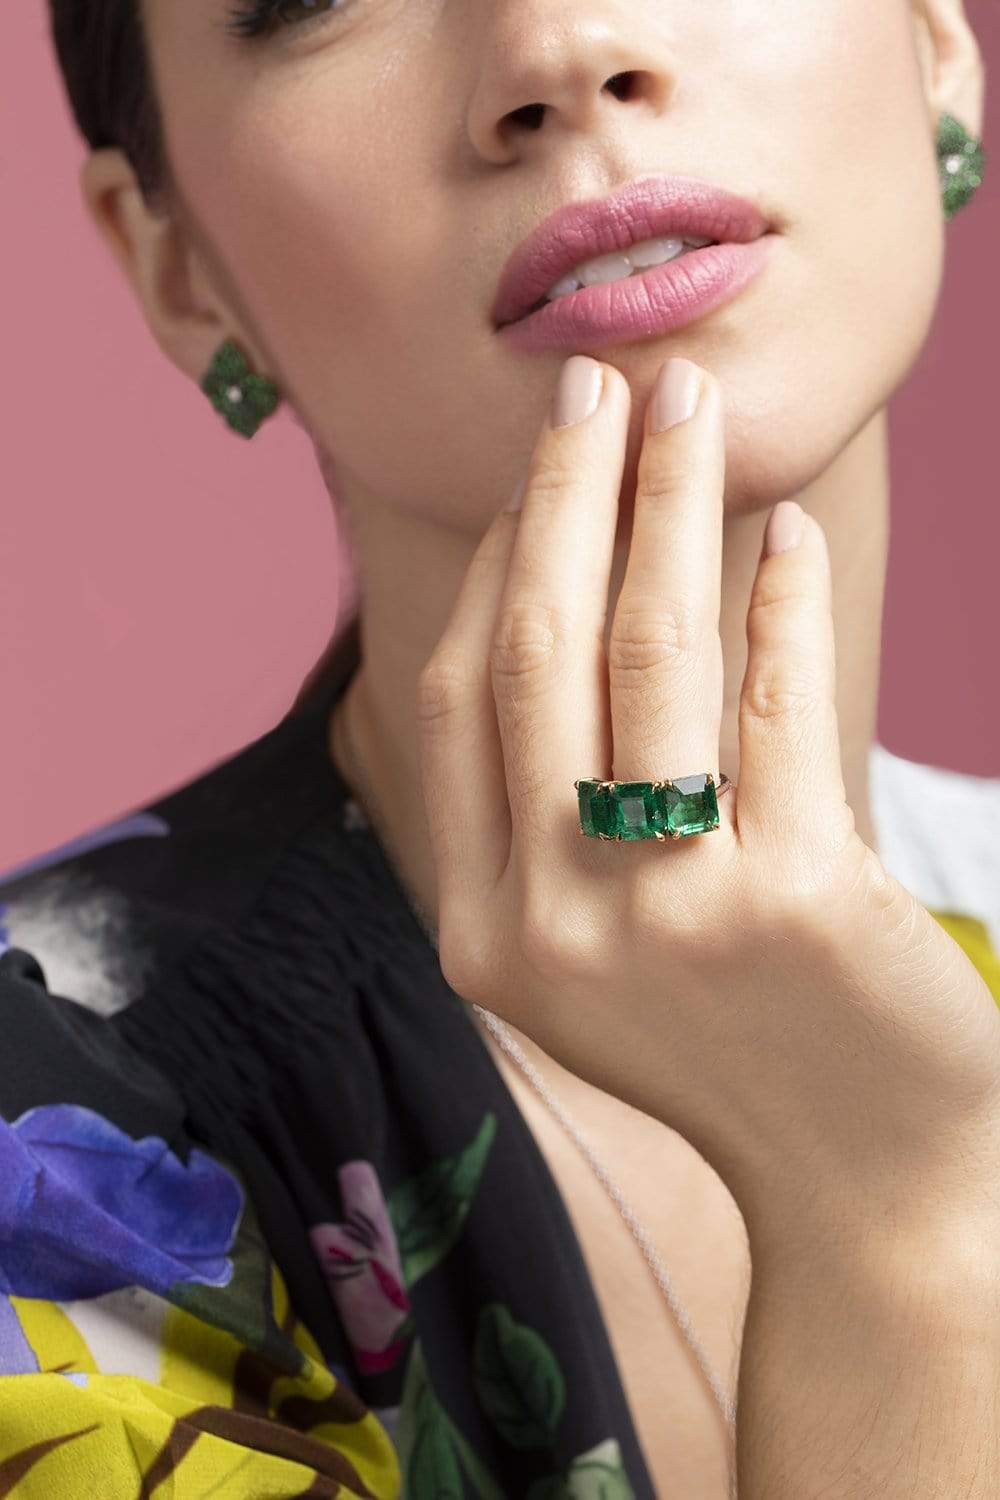 PIRANESI-Zambian Emerald Ring-PLATINUM